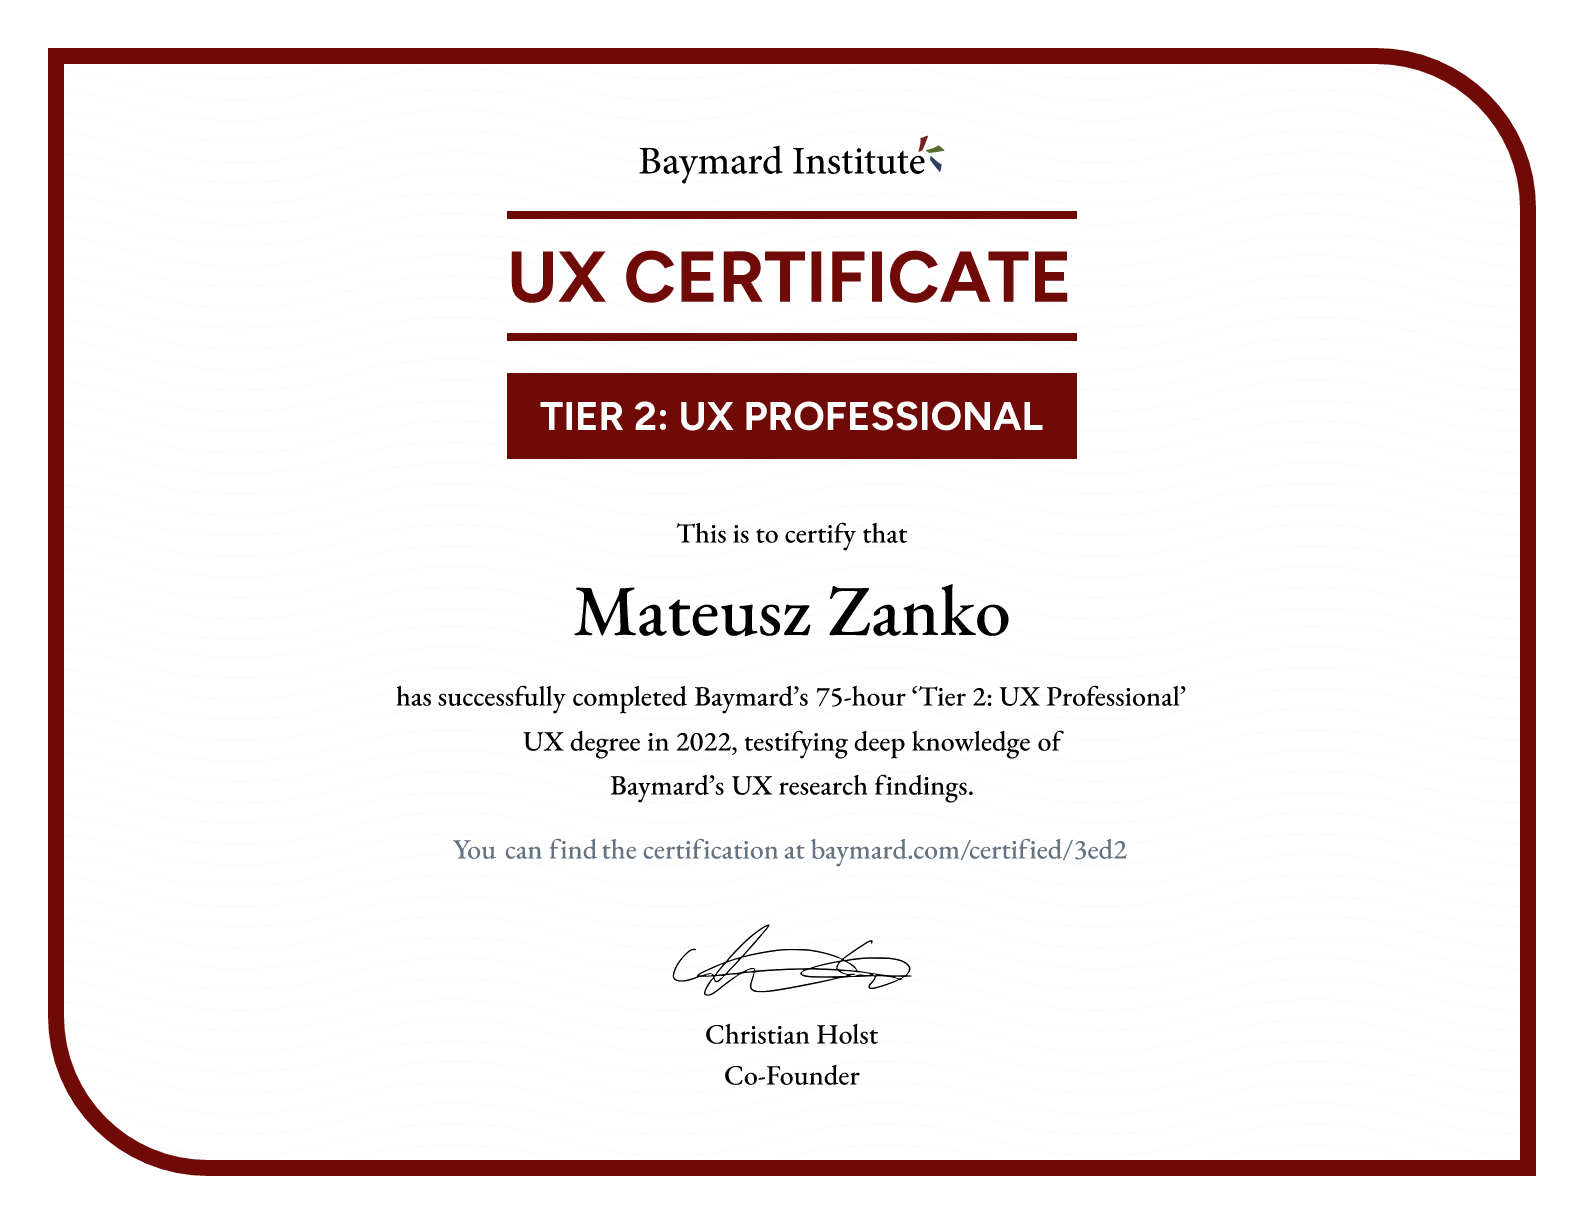 Mateusz Zanko’s certificate